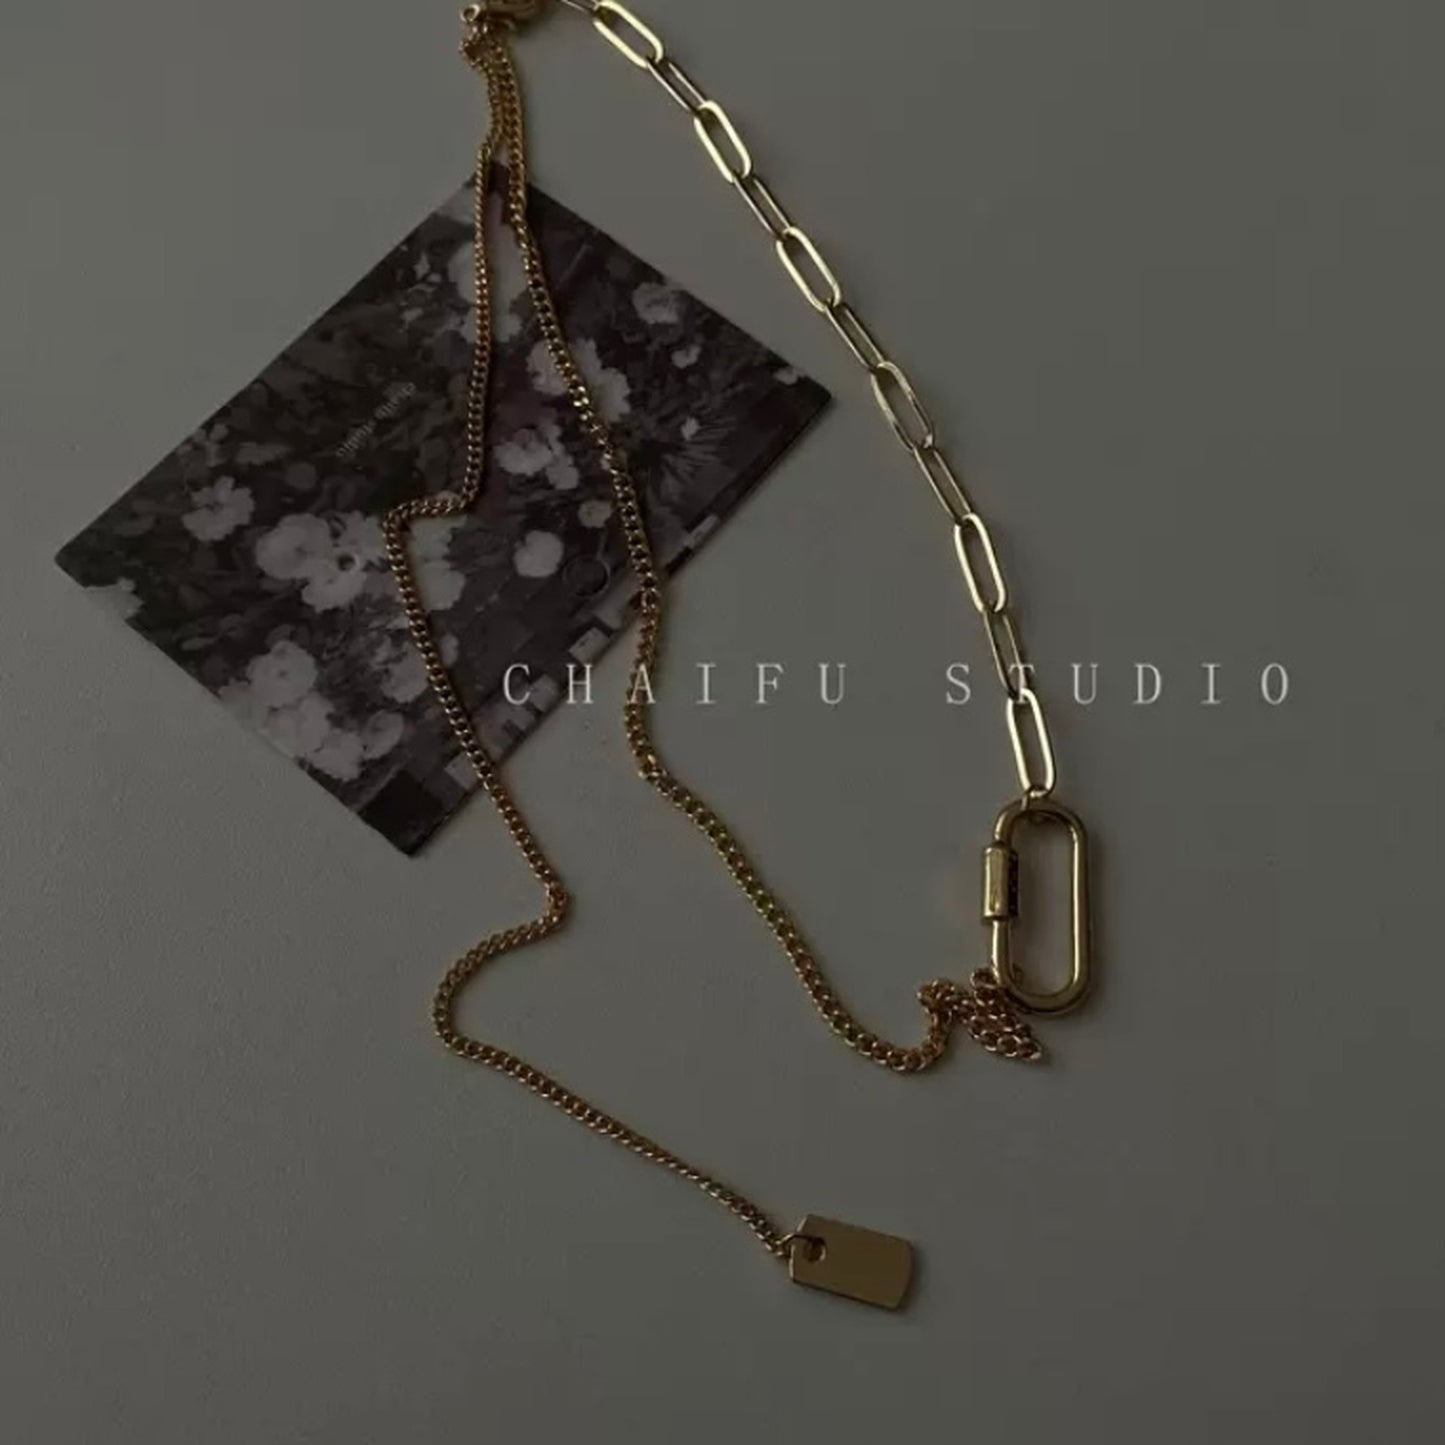 Clip chain necklace 8837